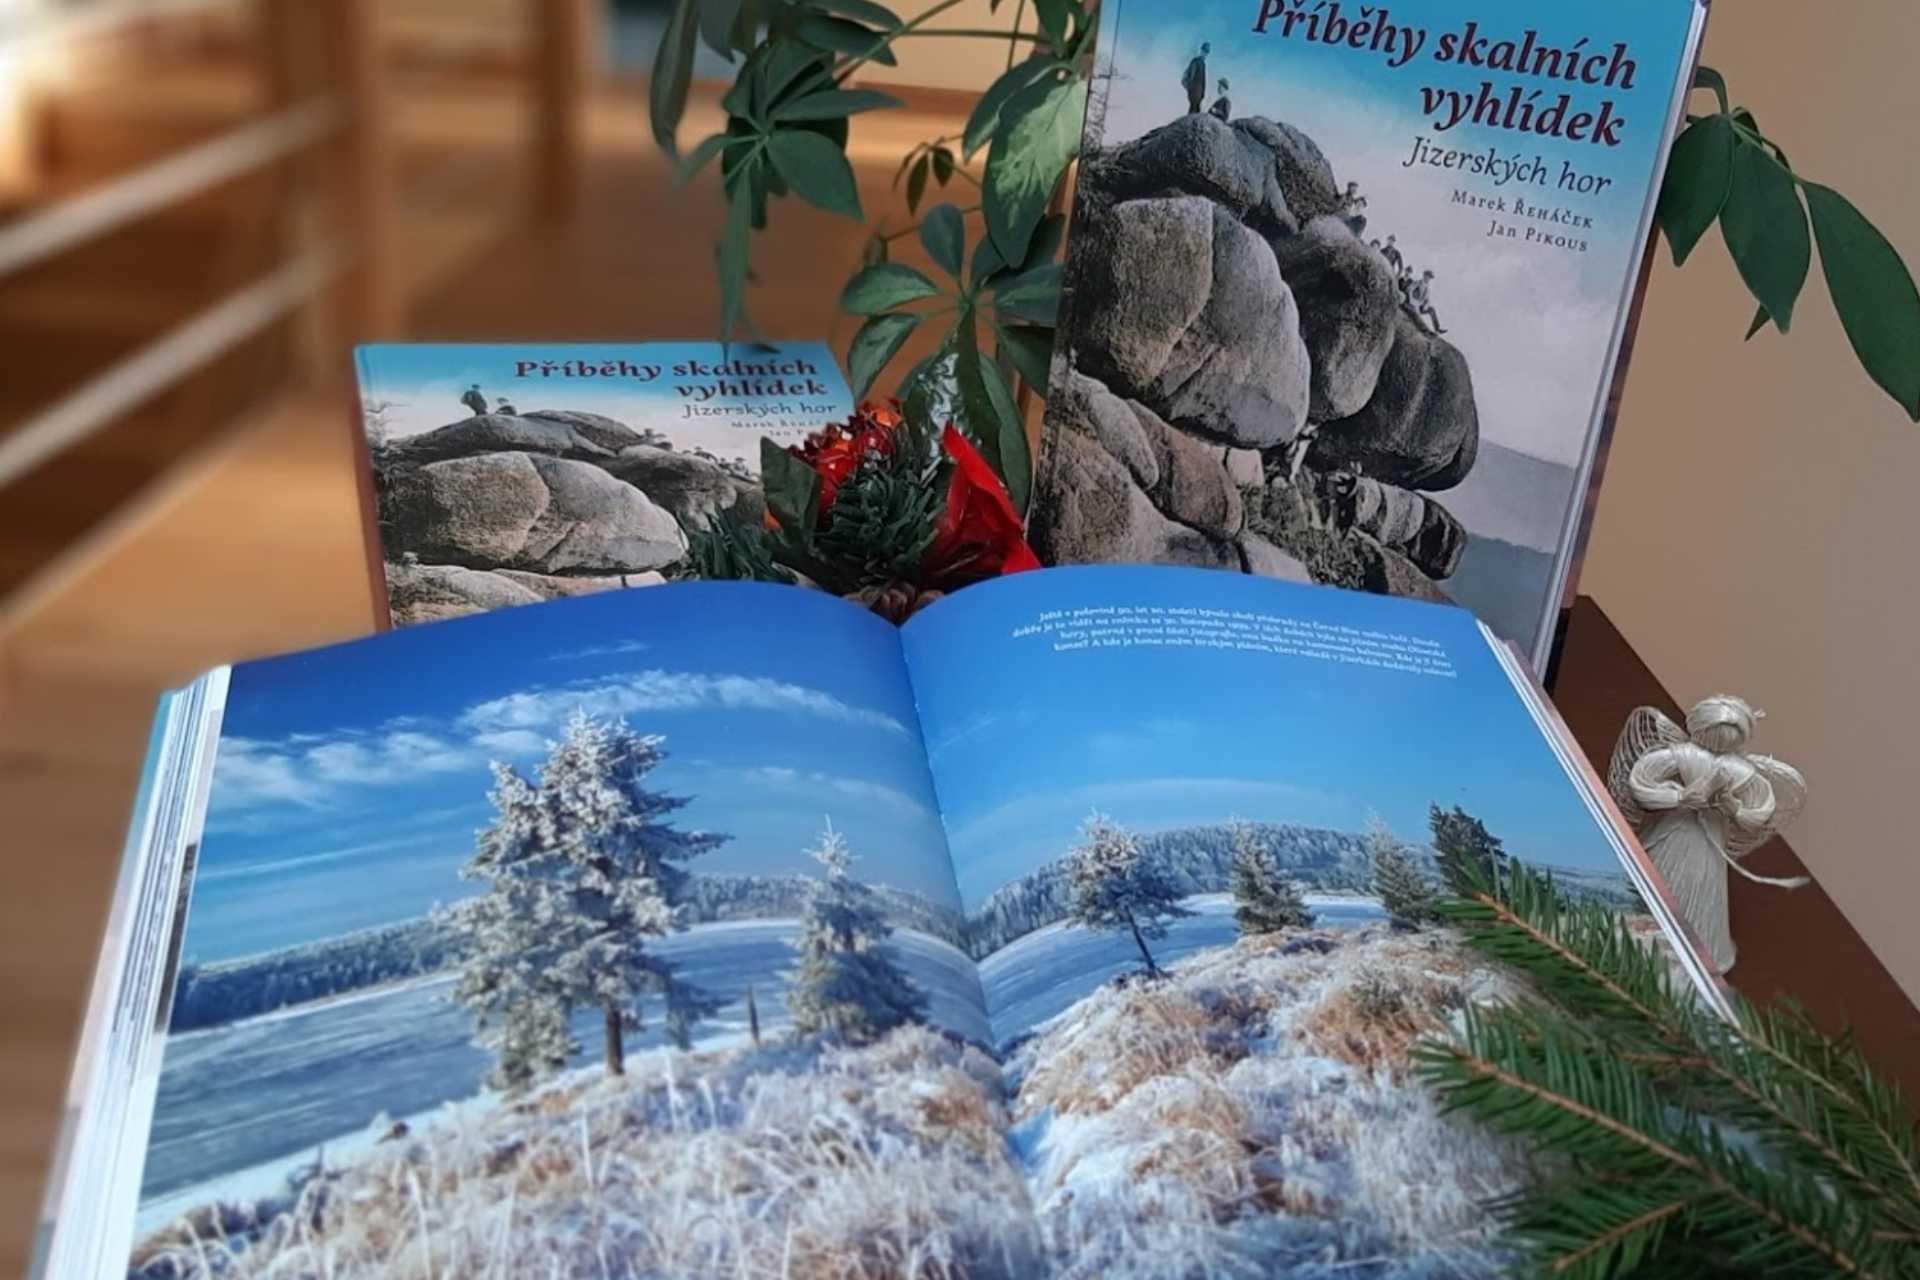 otevřená kniha Příběhy skalních vyhlídek Jizerských hor na pozadí jedné z vyhlídek se vánočními dekoracemi